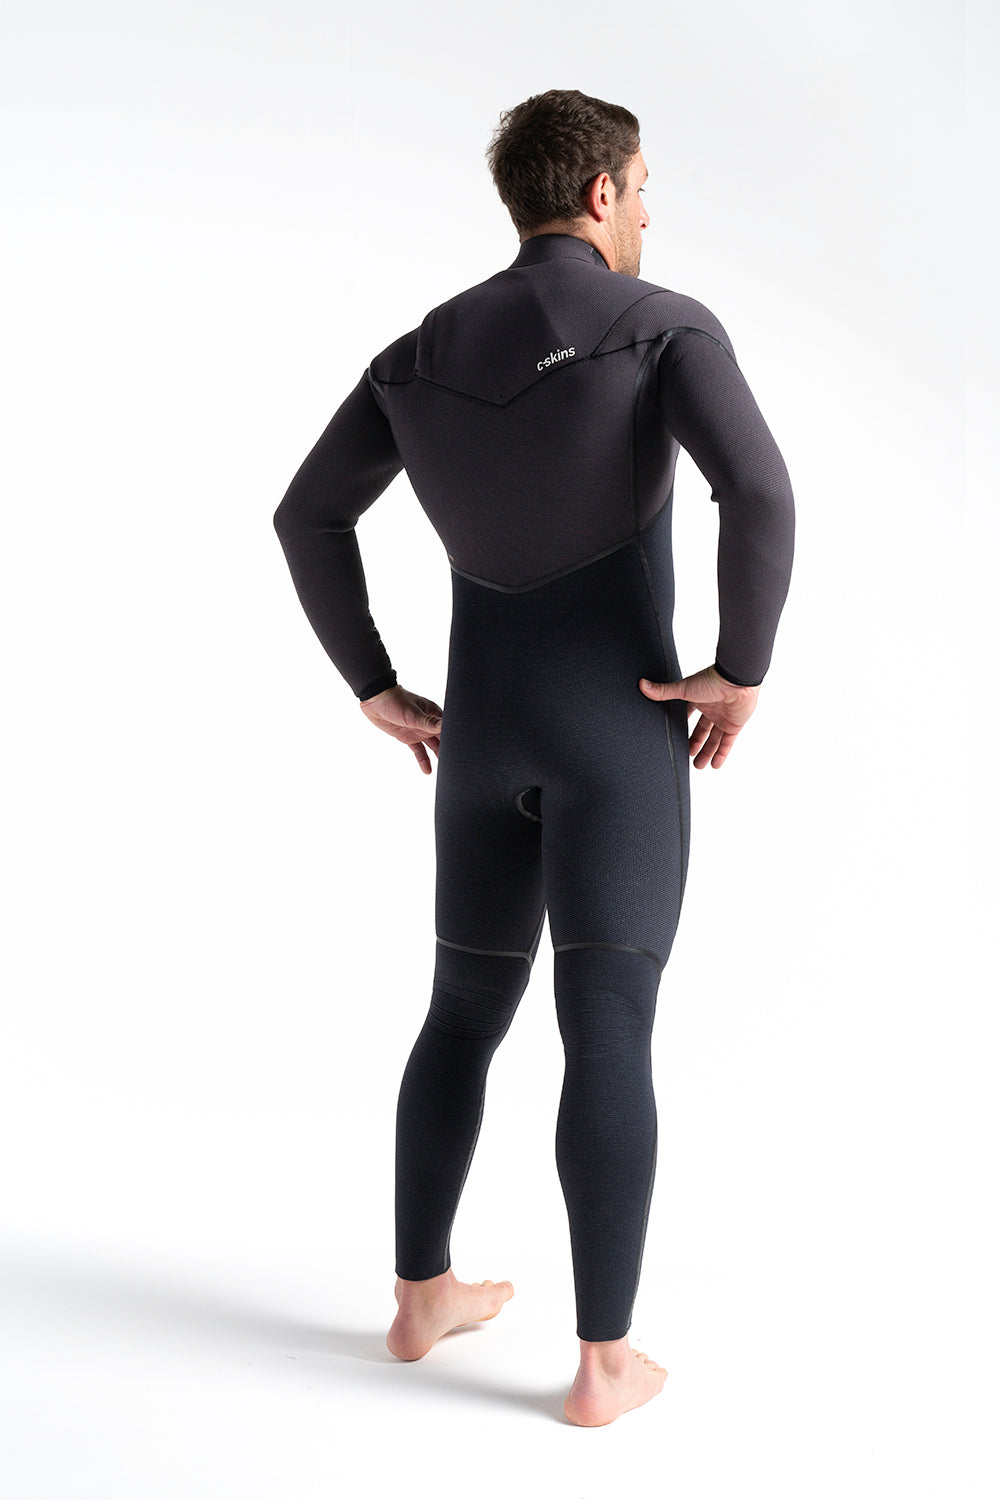 c-skins-wired-chest-zip-5-4-liquid-seams-halo-x-db8-winter-wetsuit-galway-ireland-blacksheepsurfco-side-2